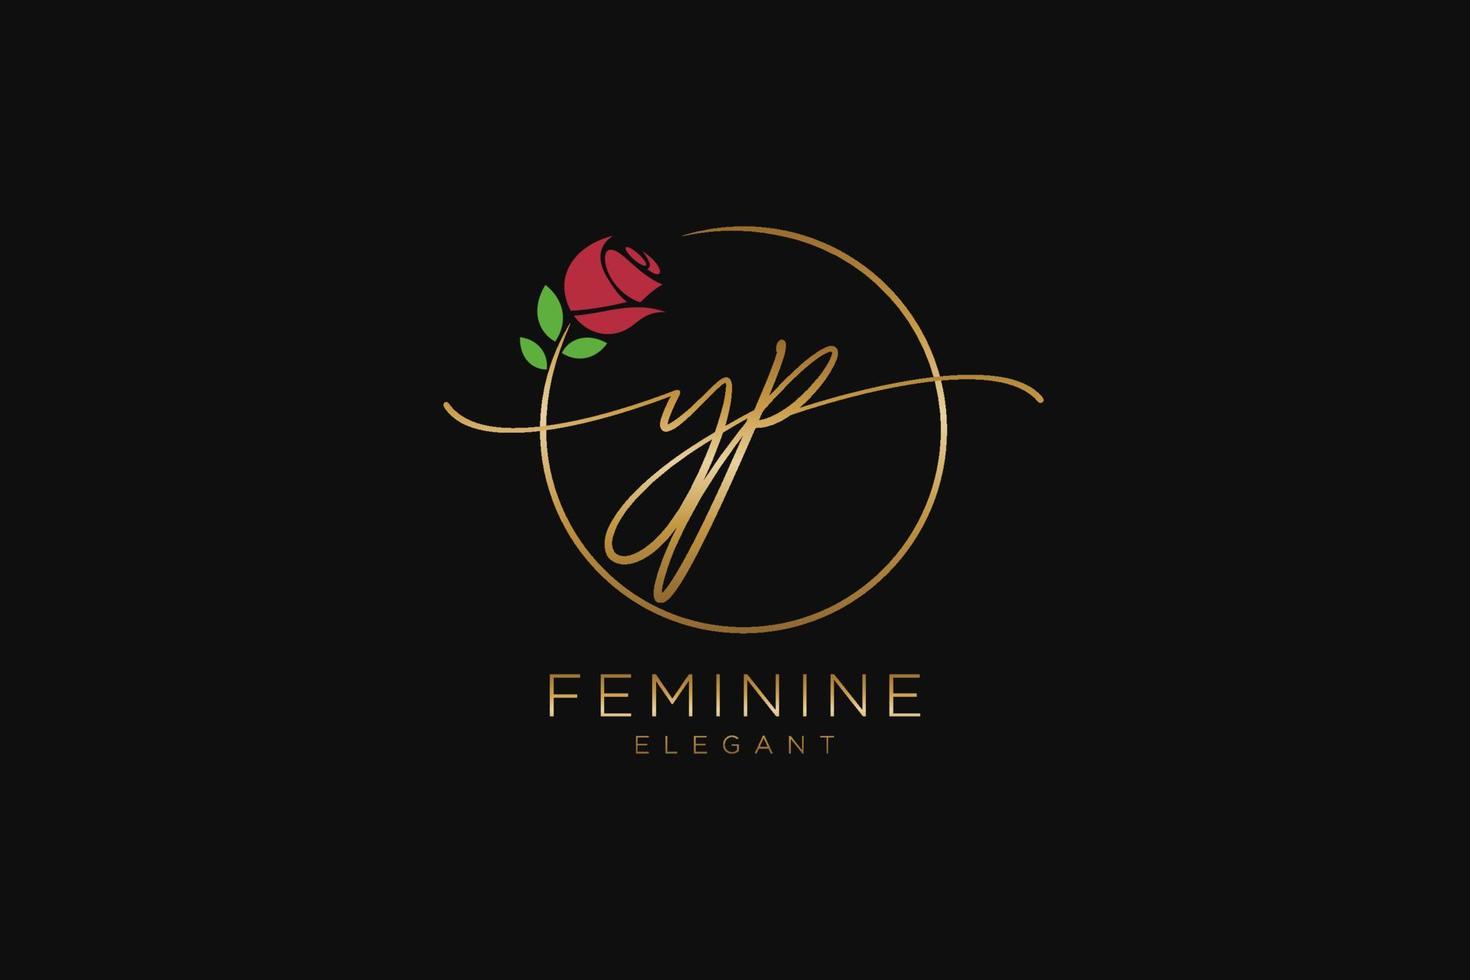 monogramme de beauté du logo féminin initial yp et design élégant du logo, logo manuscrit de la signature initiale, mariage, mode, floral et botanique avec modèle créatif. vecteur